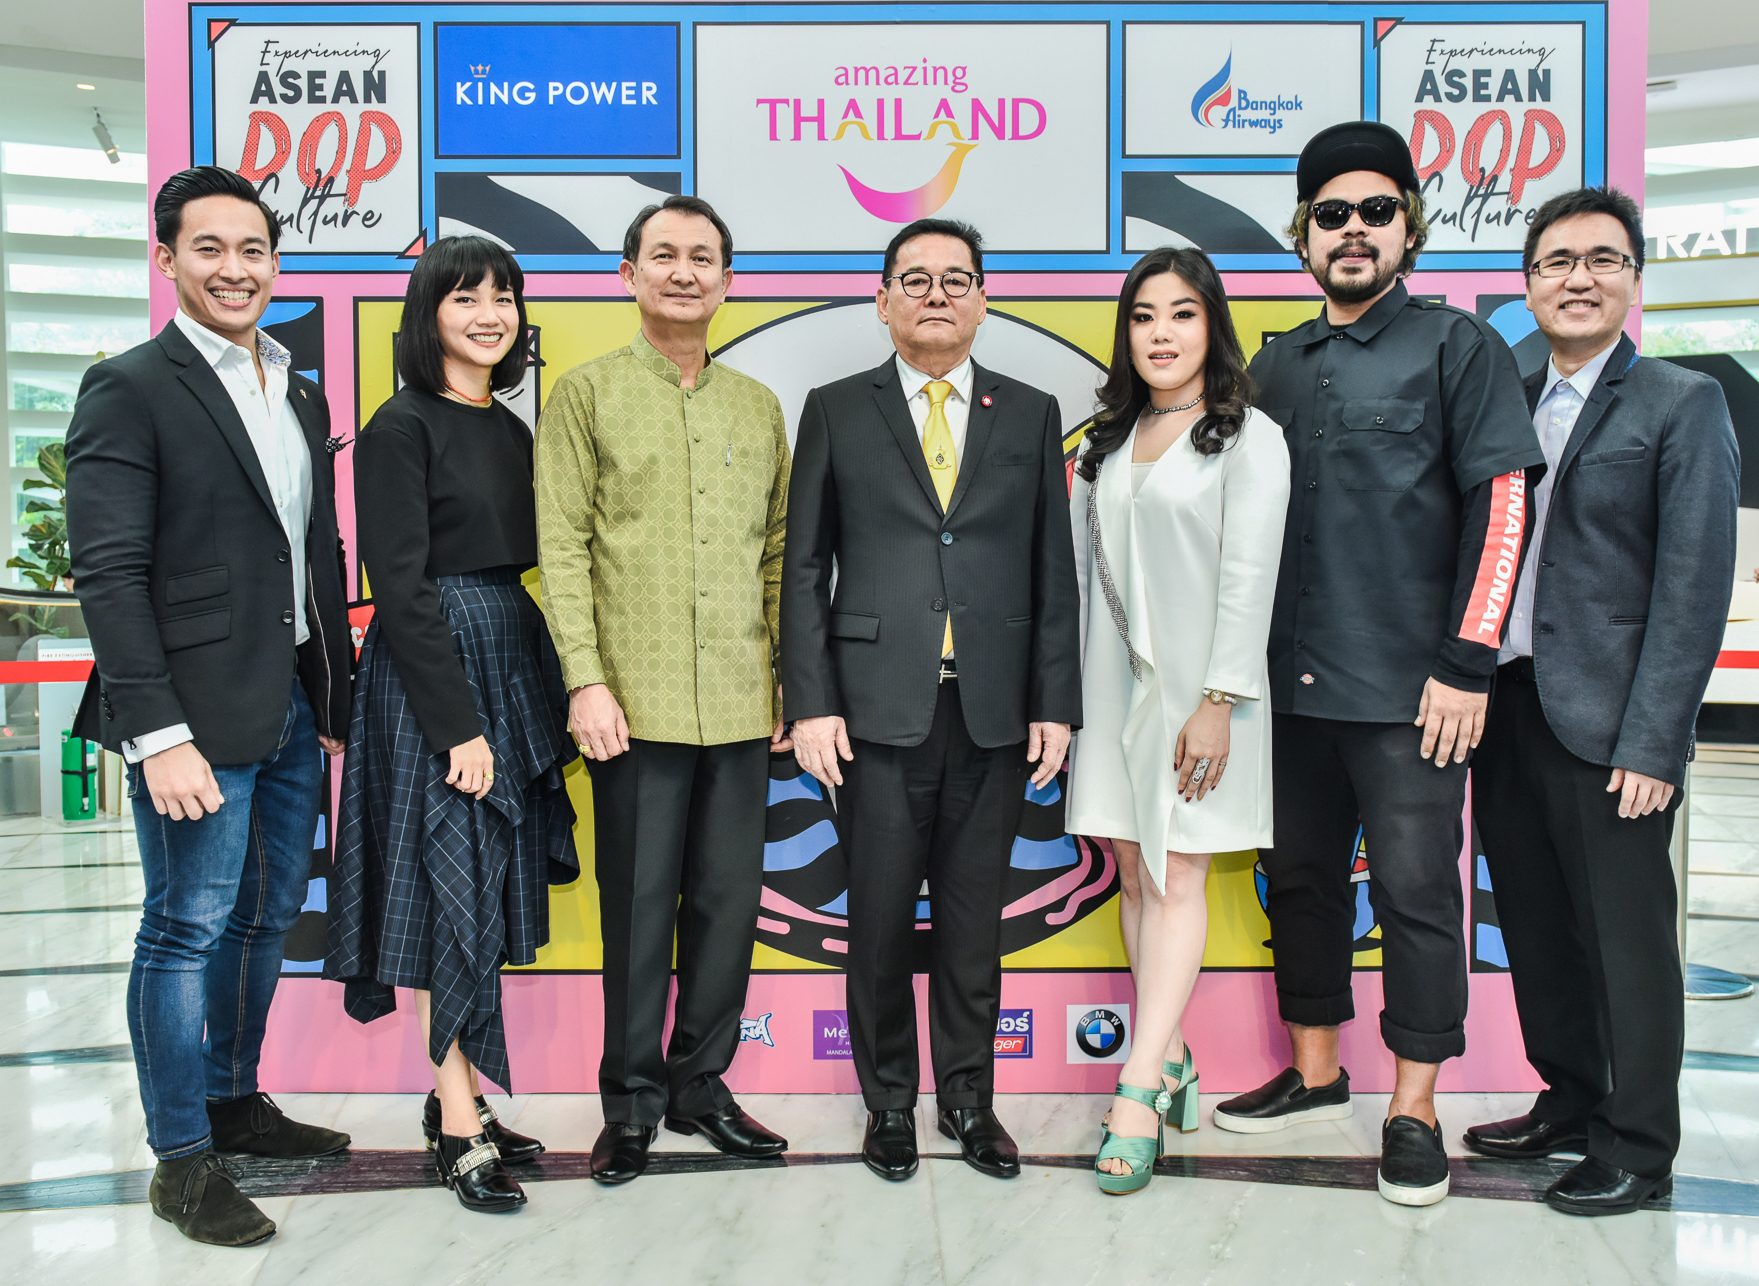 Experiencing ASEAN POP Culture